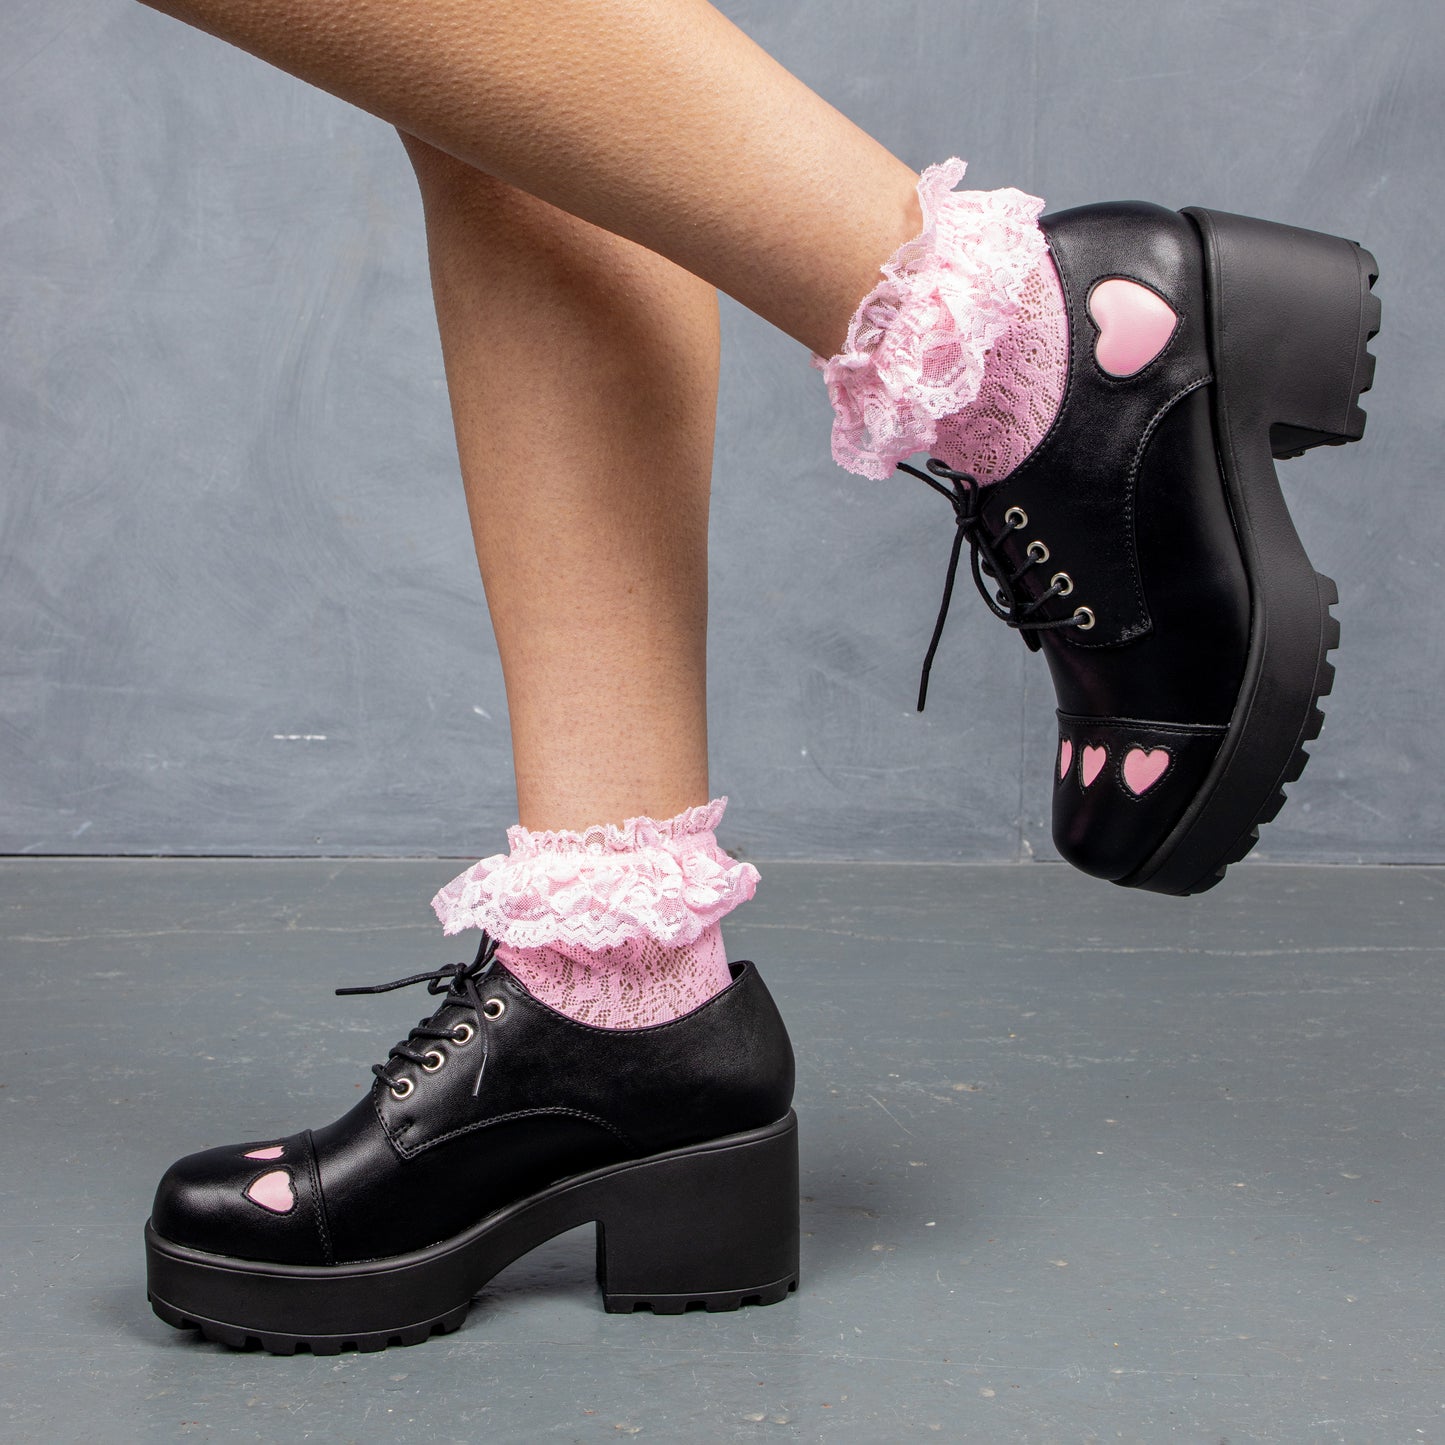 Tennin Heart Shoes - Shoes - KOI Footwear - Black - Model Side View